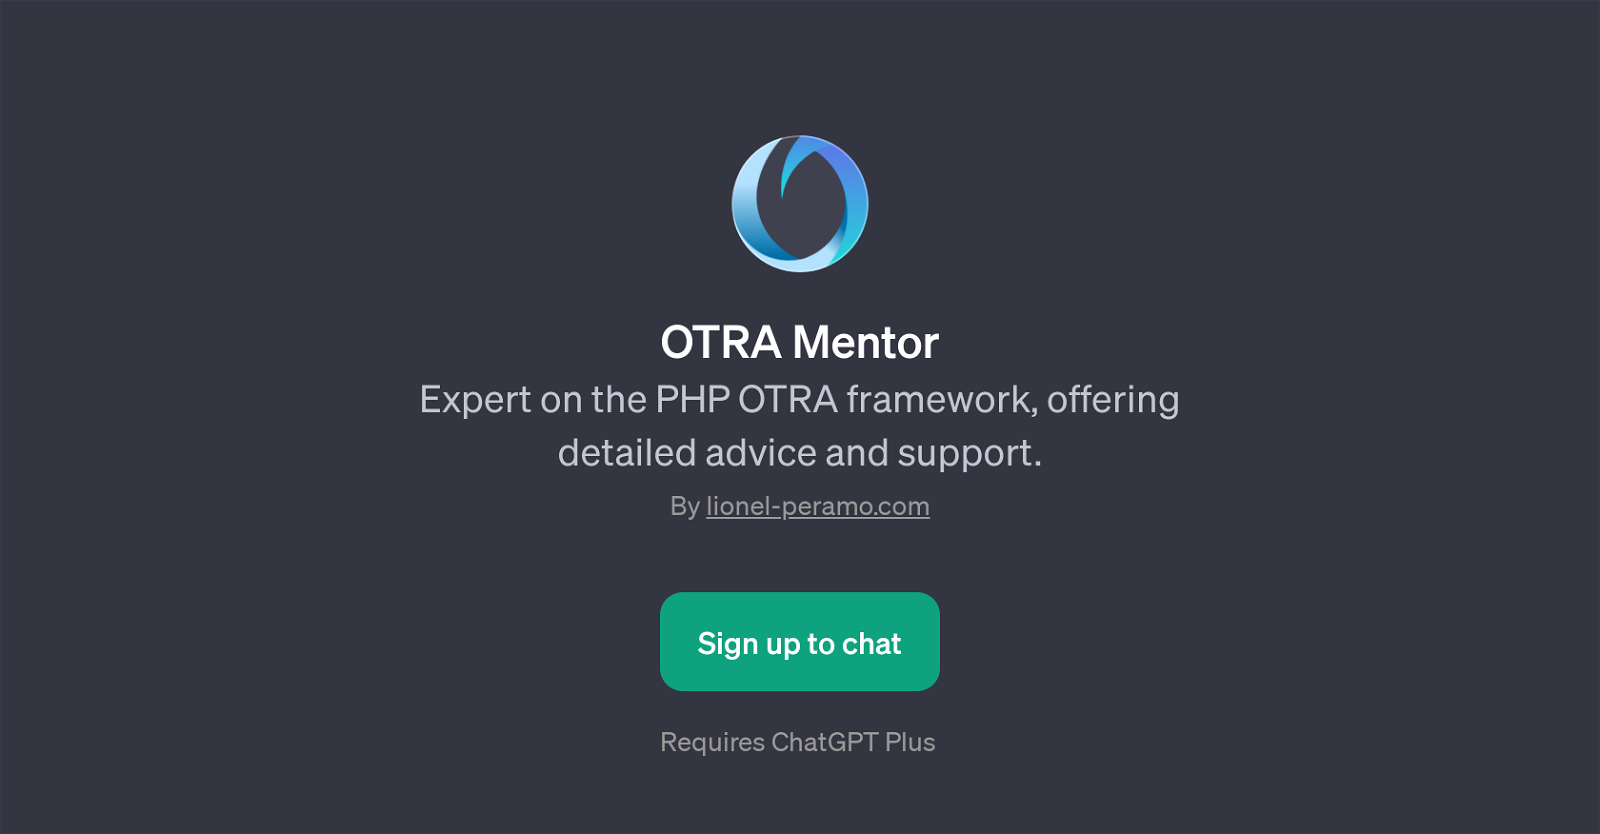 OTRA Mentor website